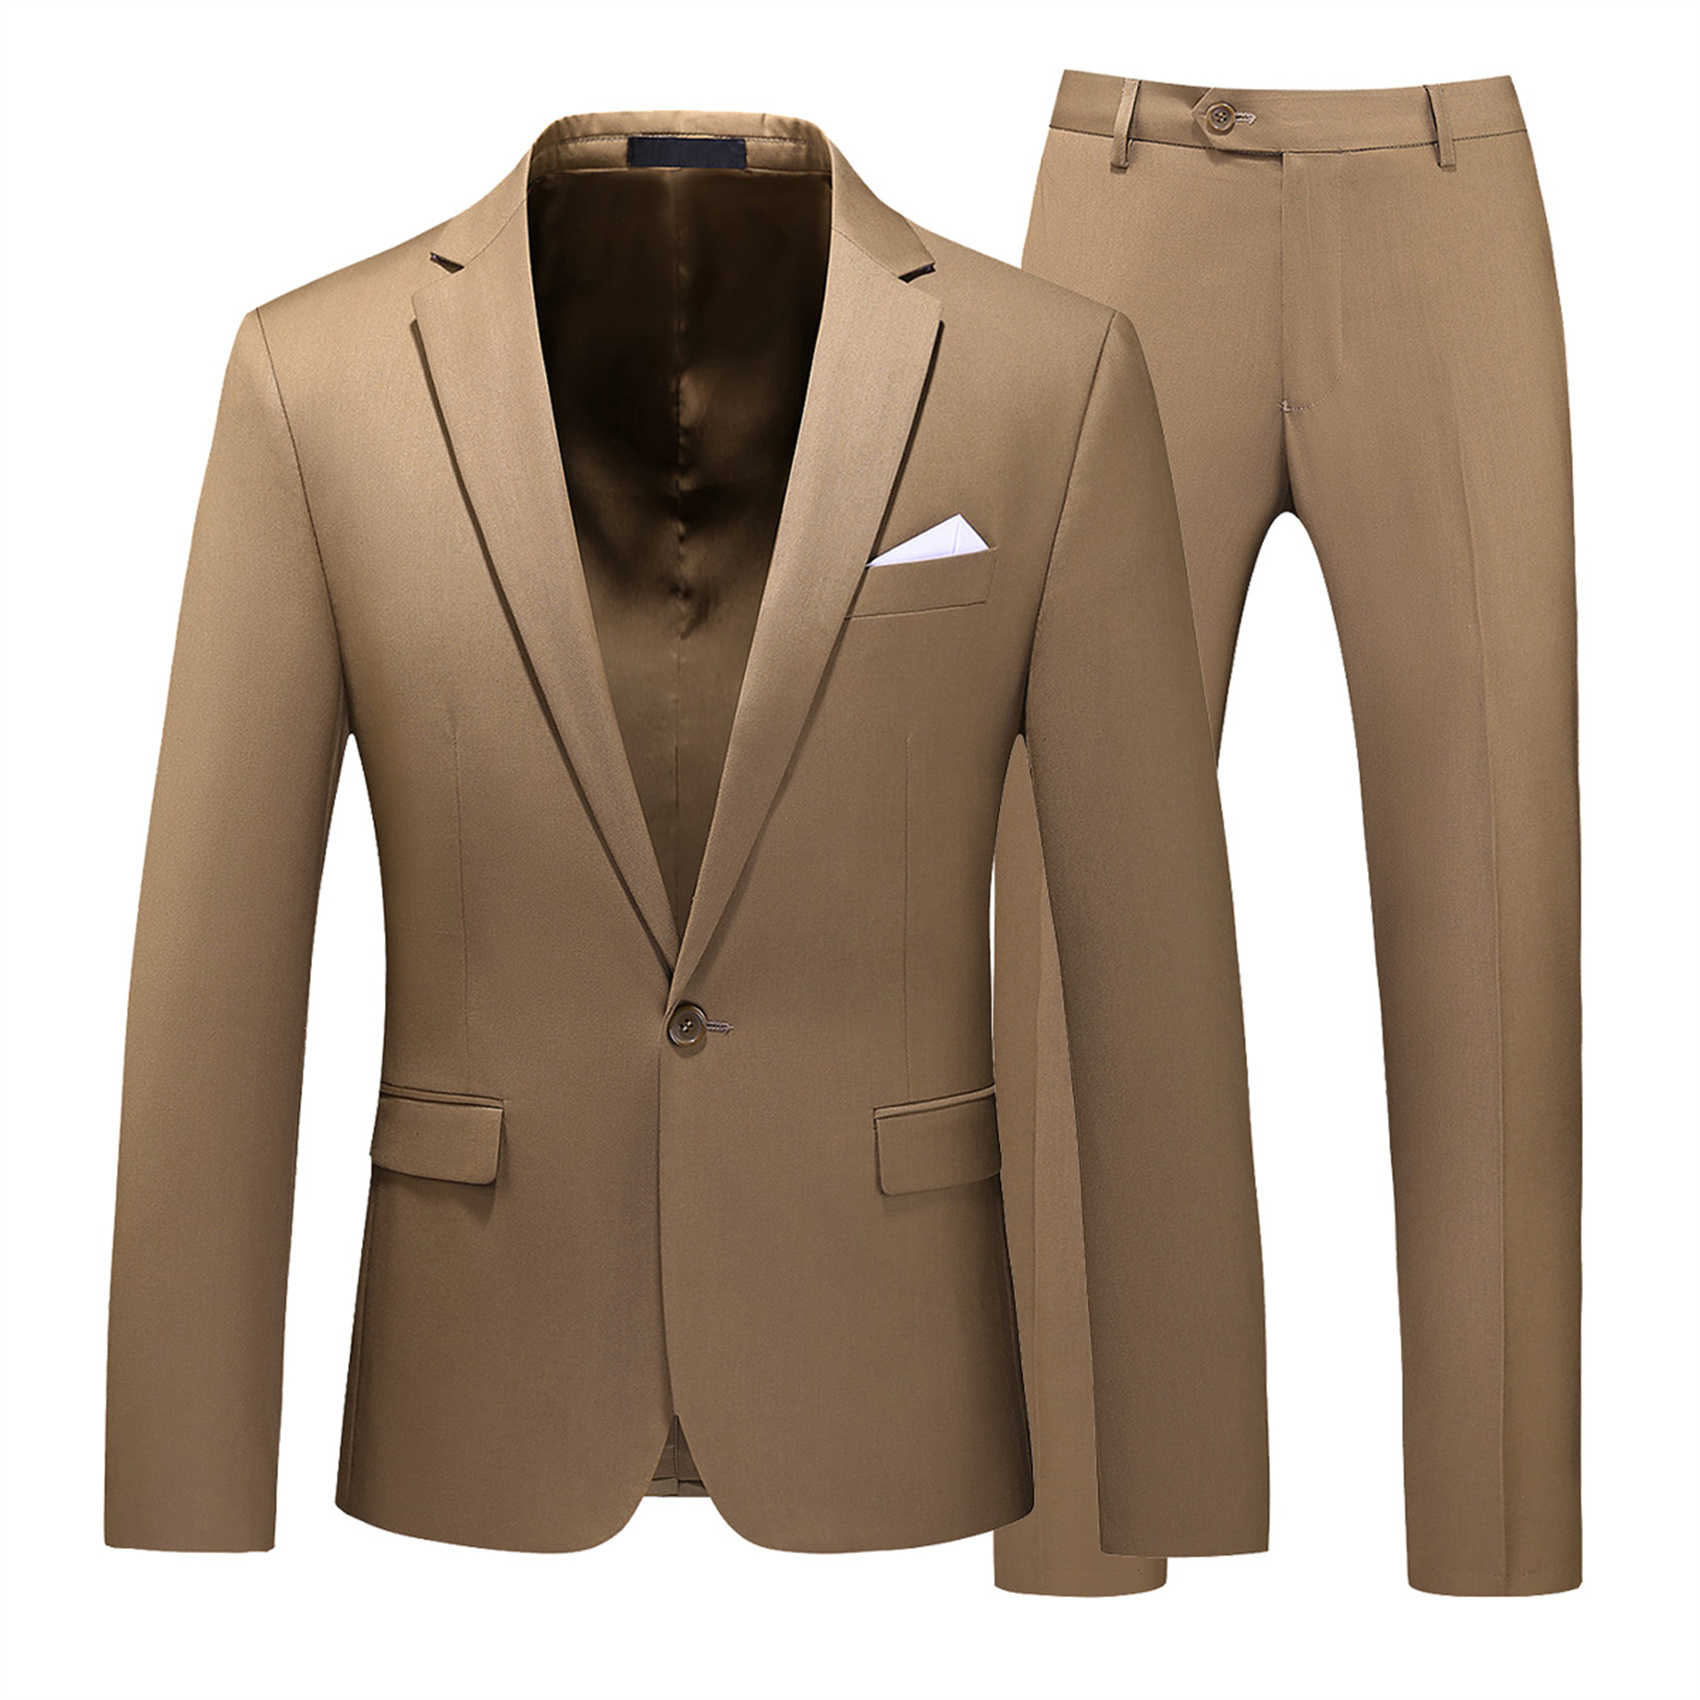 2 Piece Suit for Men, Plain, Khaki, Skinny (1 Button)